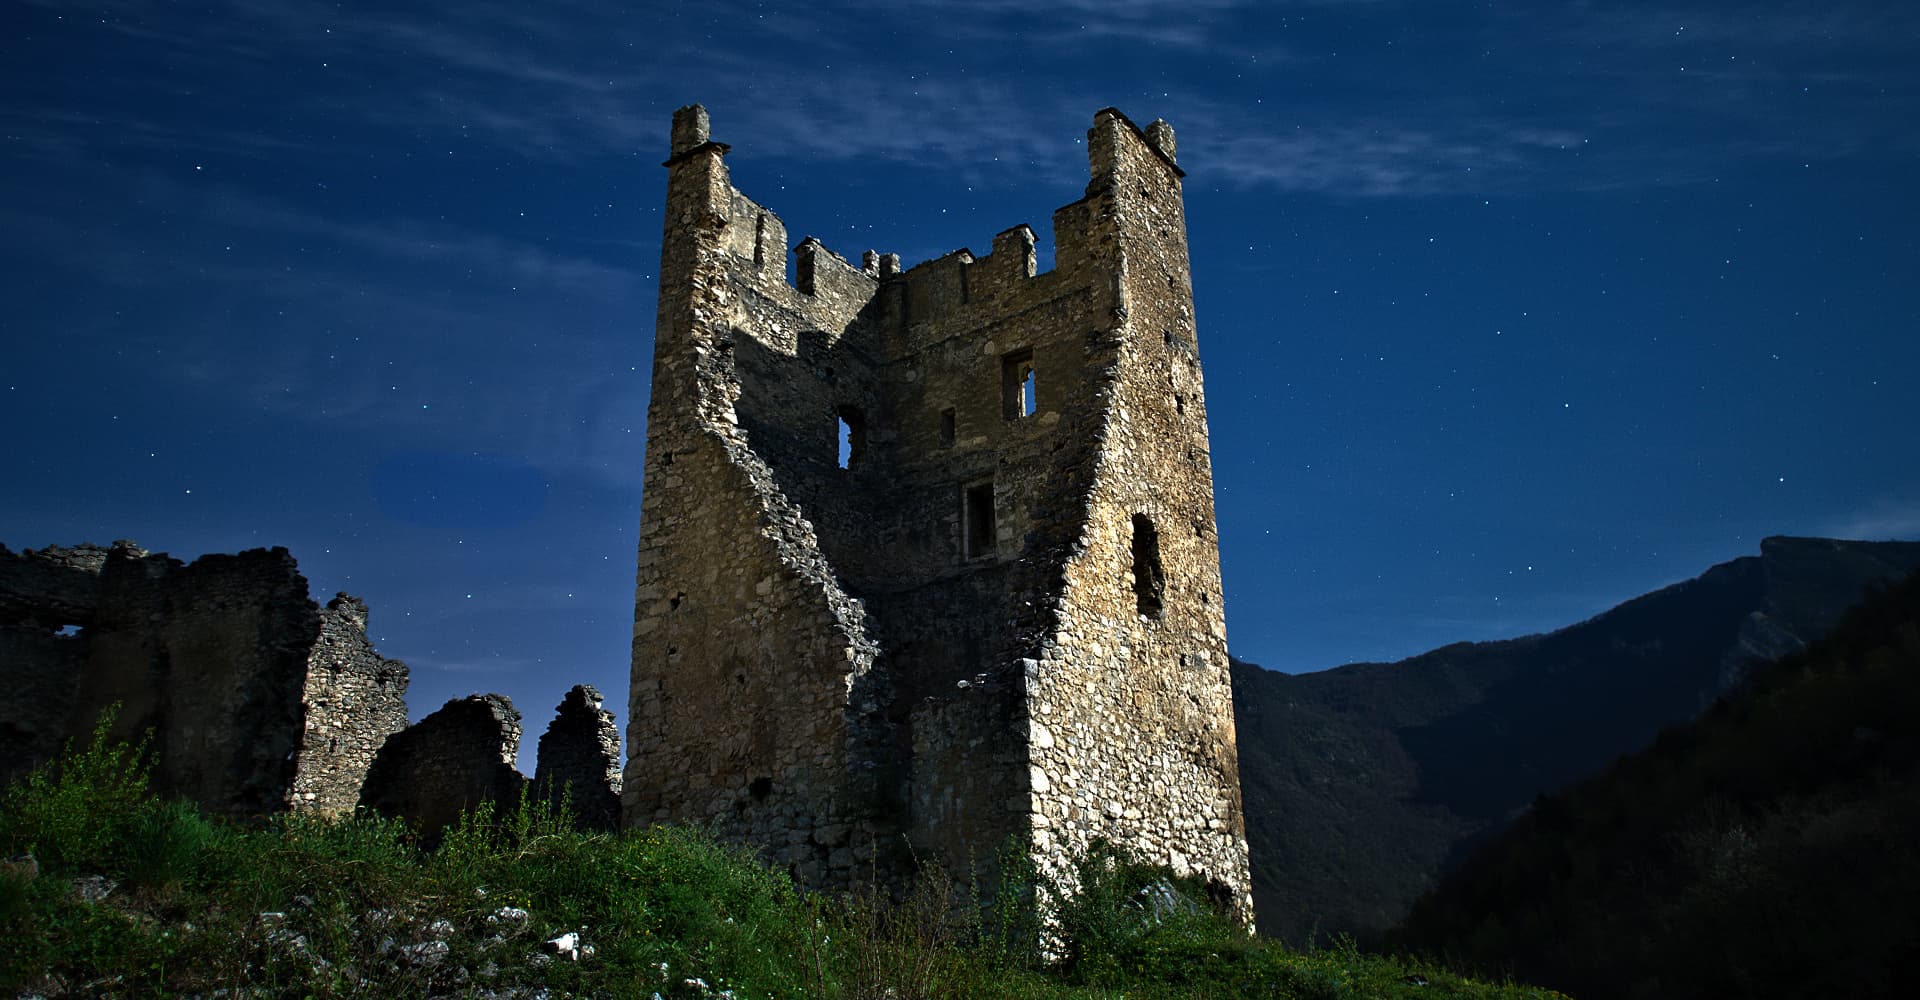 Le château de Miglos, éclairé par la pleine lune (photographie : Philippe Contal, 2014 ; coup de cœur et 5ᵉ place au concours Wiki Loves Monuments France 2019 sur 8 330 images)